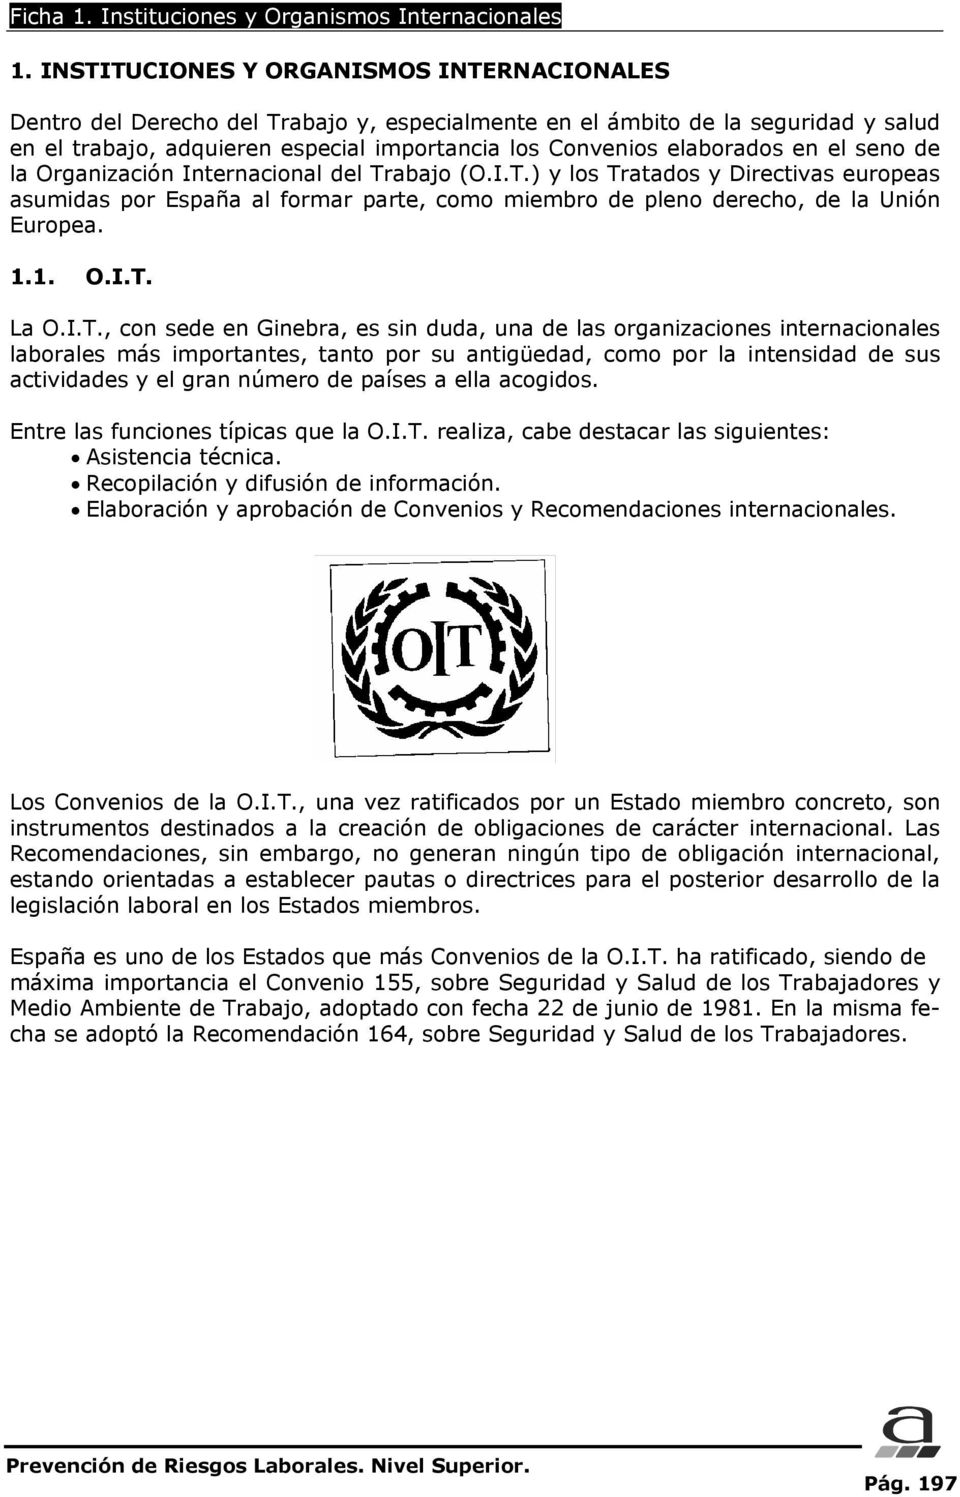 en el seno de la Organización Internacional del Trabajo (O.I.T.) y los Tratados y Directivas europeas asumidas por España al formar parte, como miembro de pleno derecho, de la Unión Europea. 1.1. O.I.T. La O.